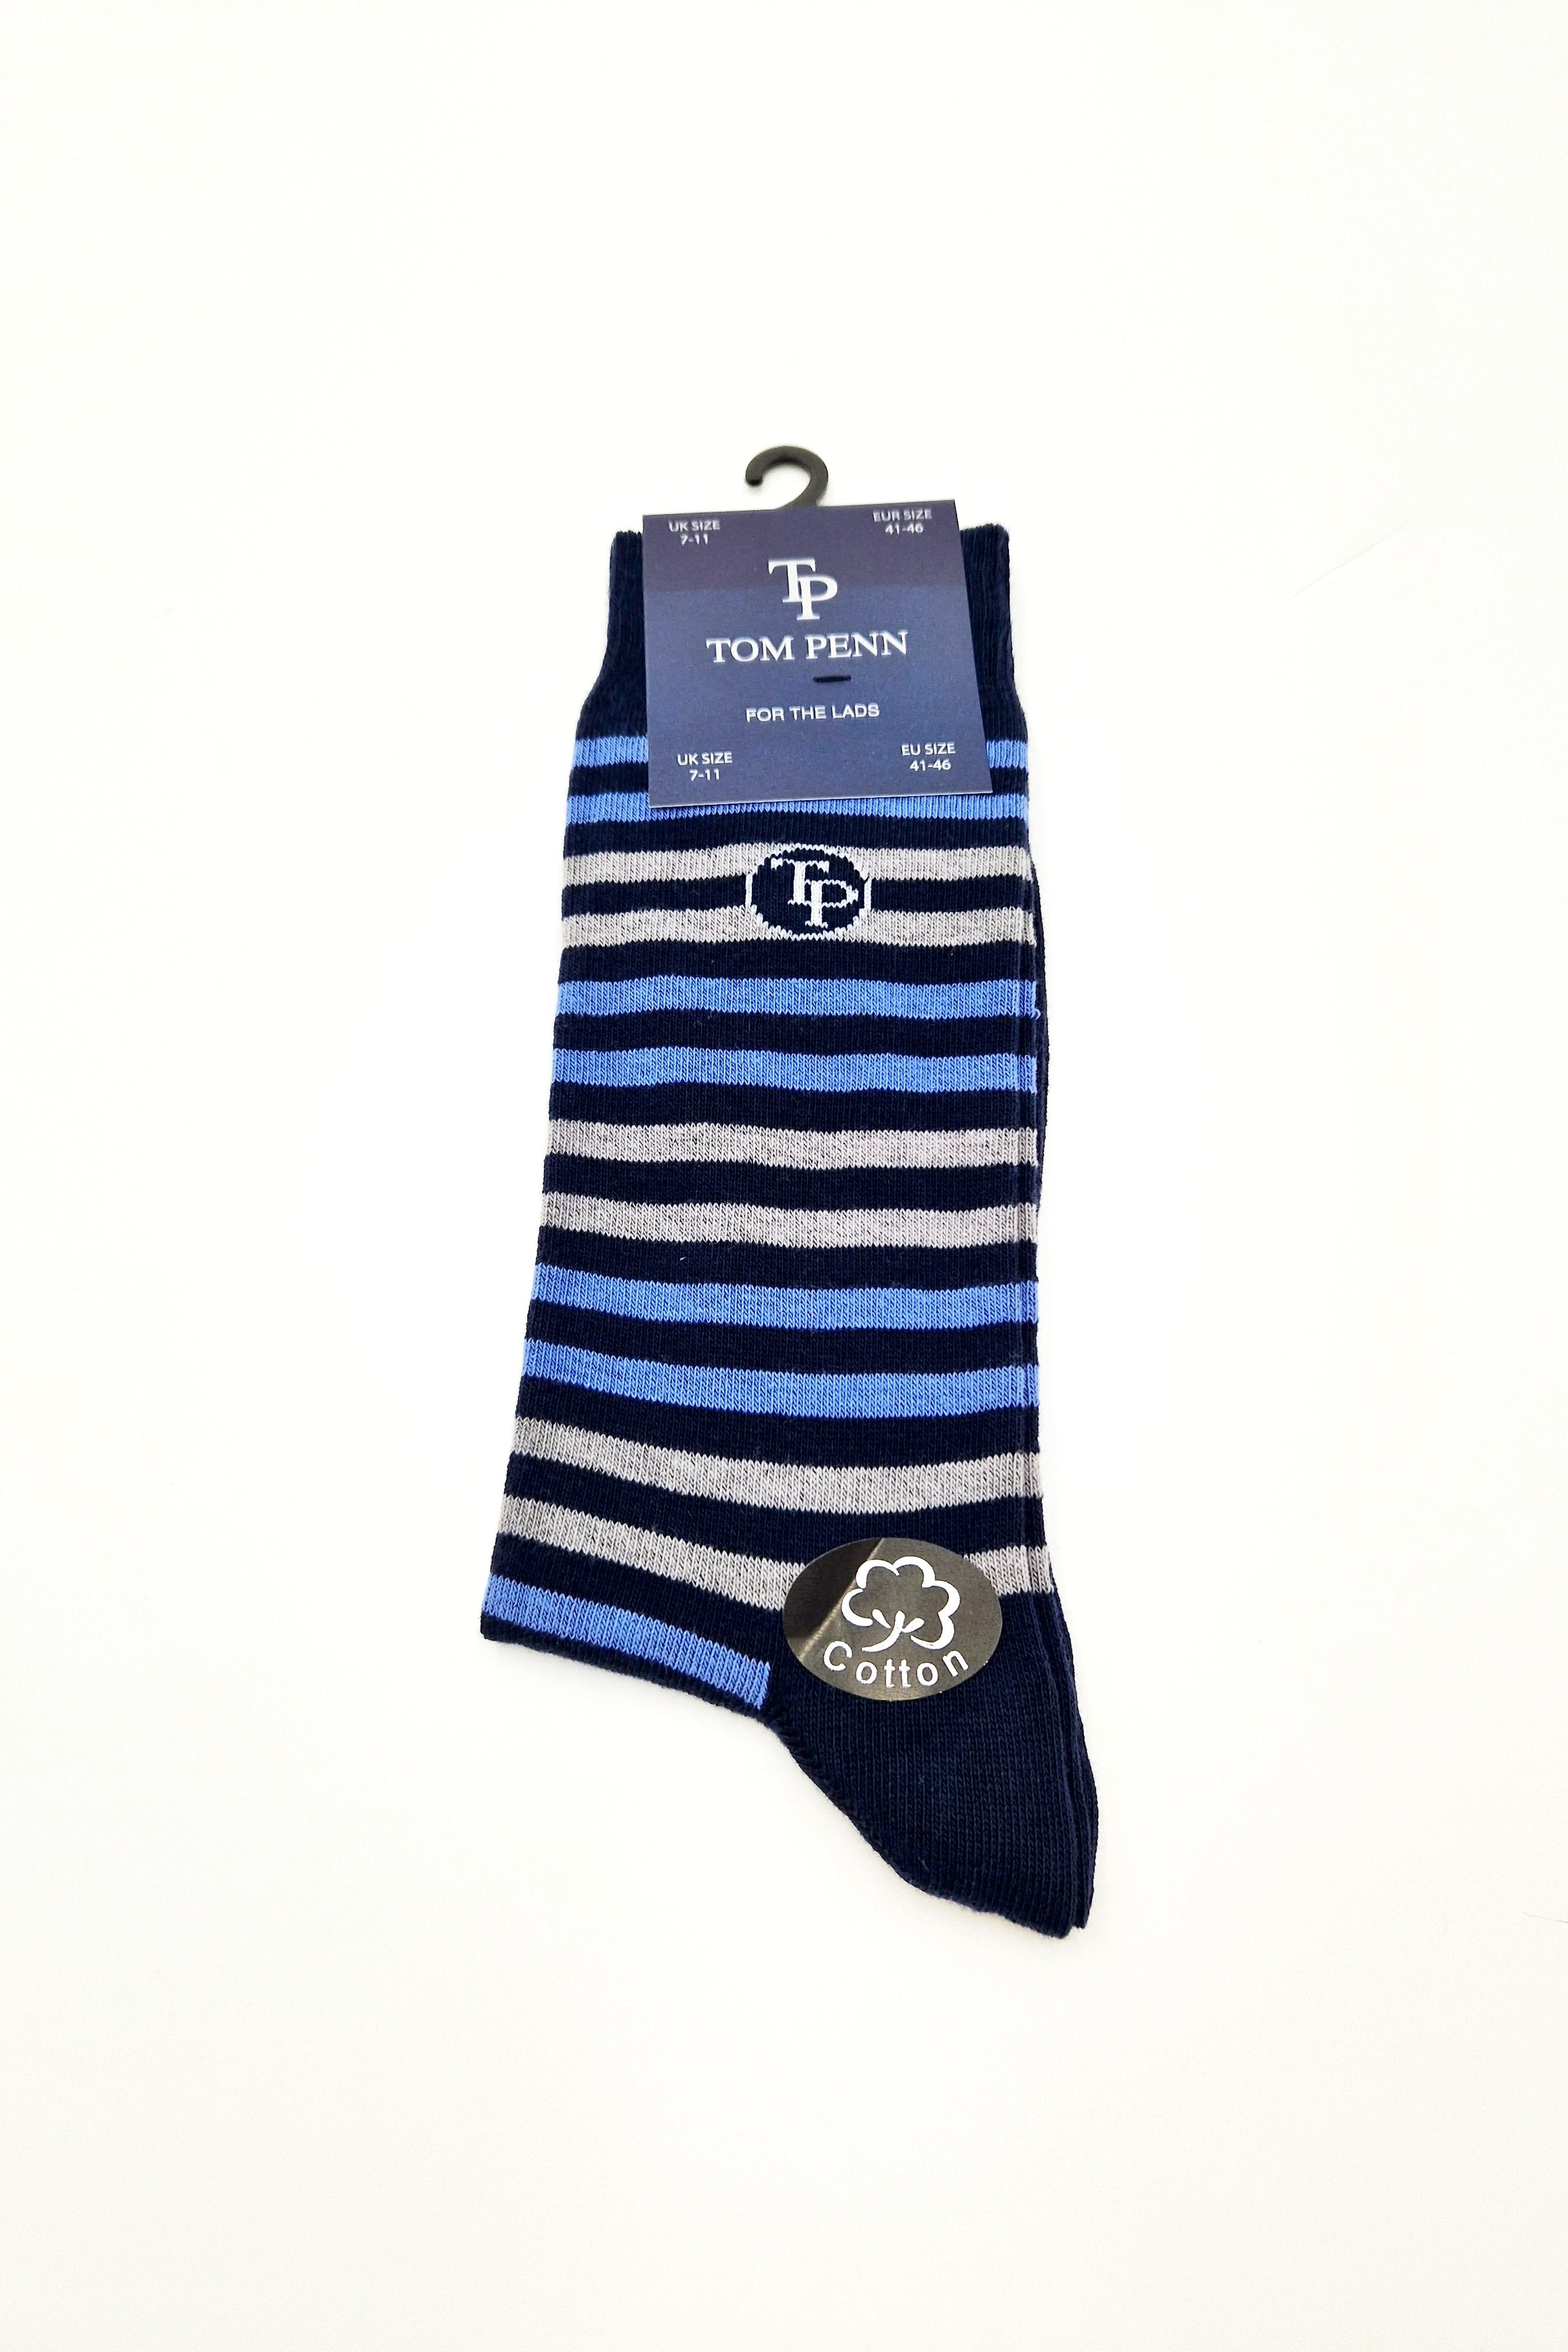 TP Navy / Grey Stripe Socks